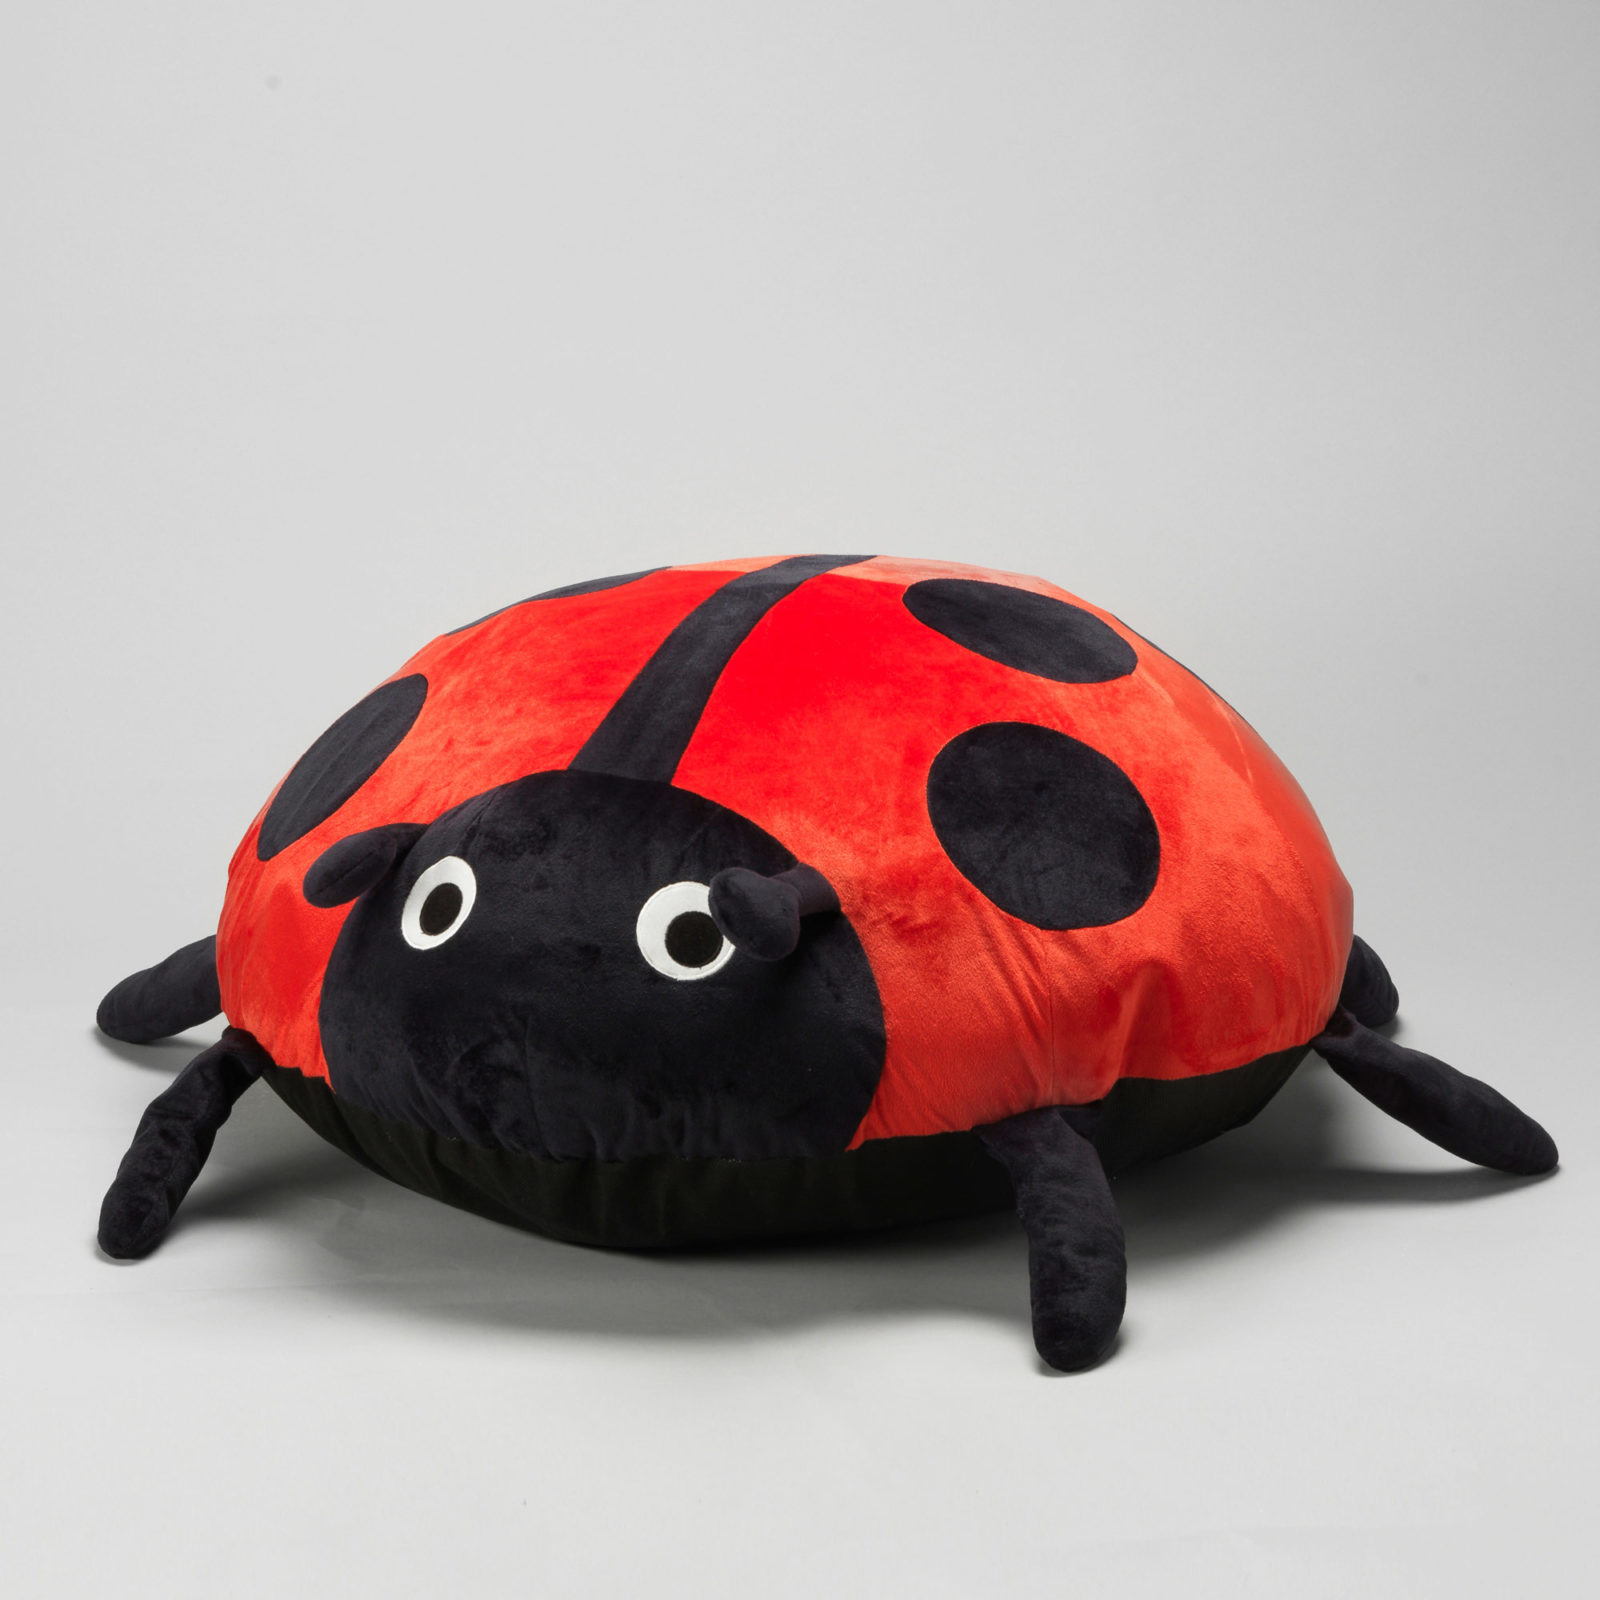 Kissen in Form eines rot-schwarzen Marienkäfers mit großen, runden Augen.